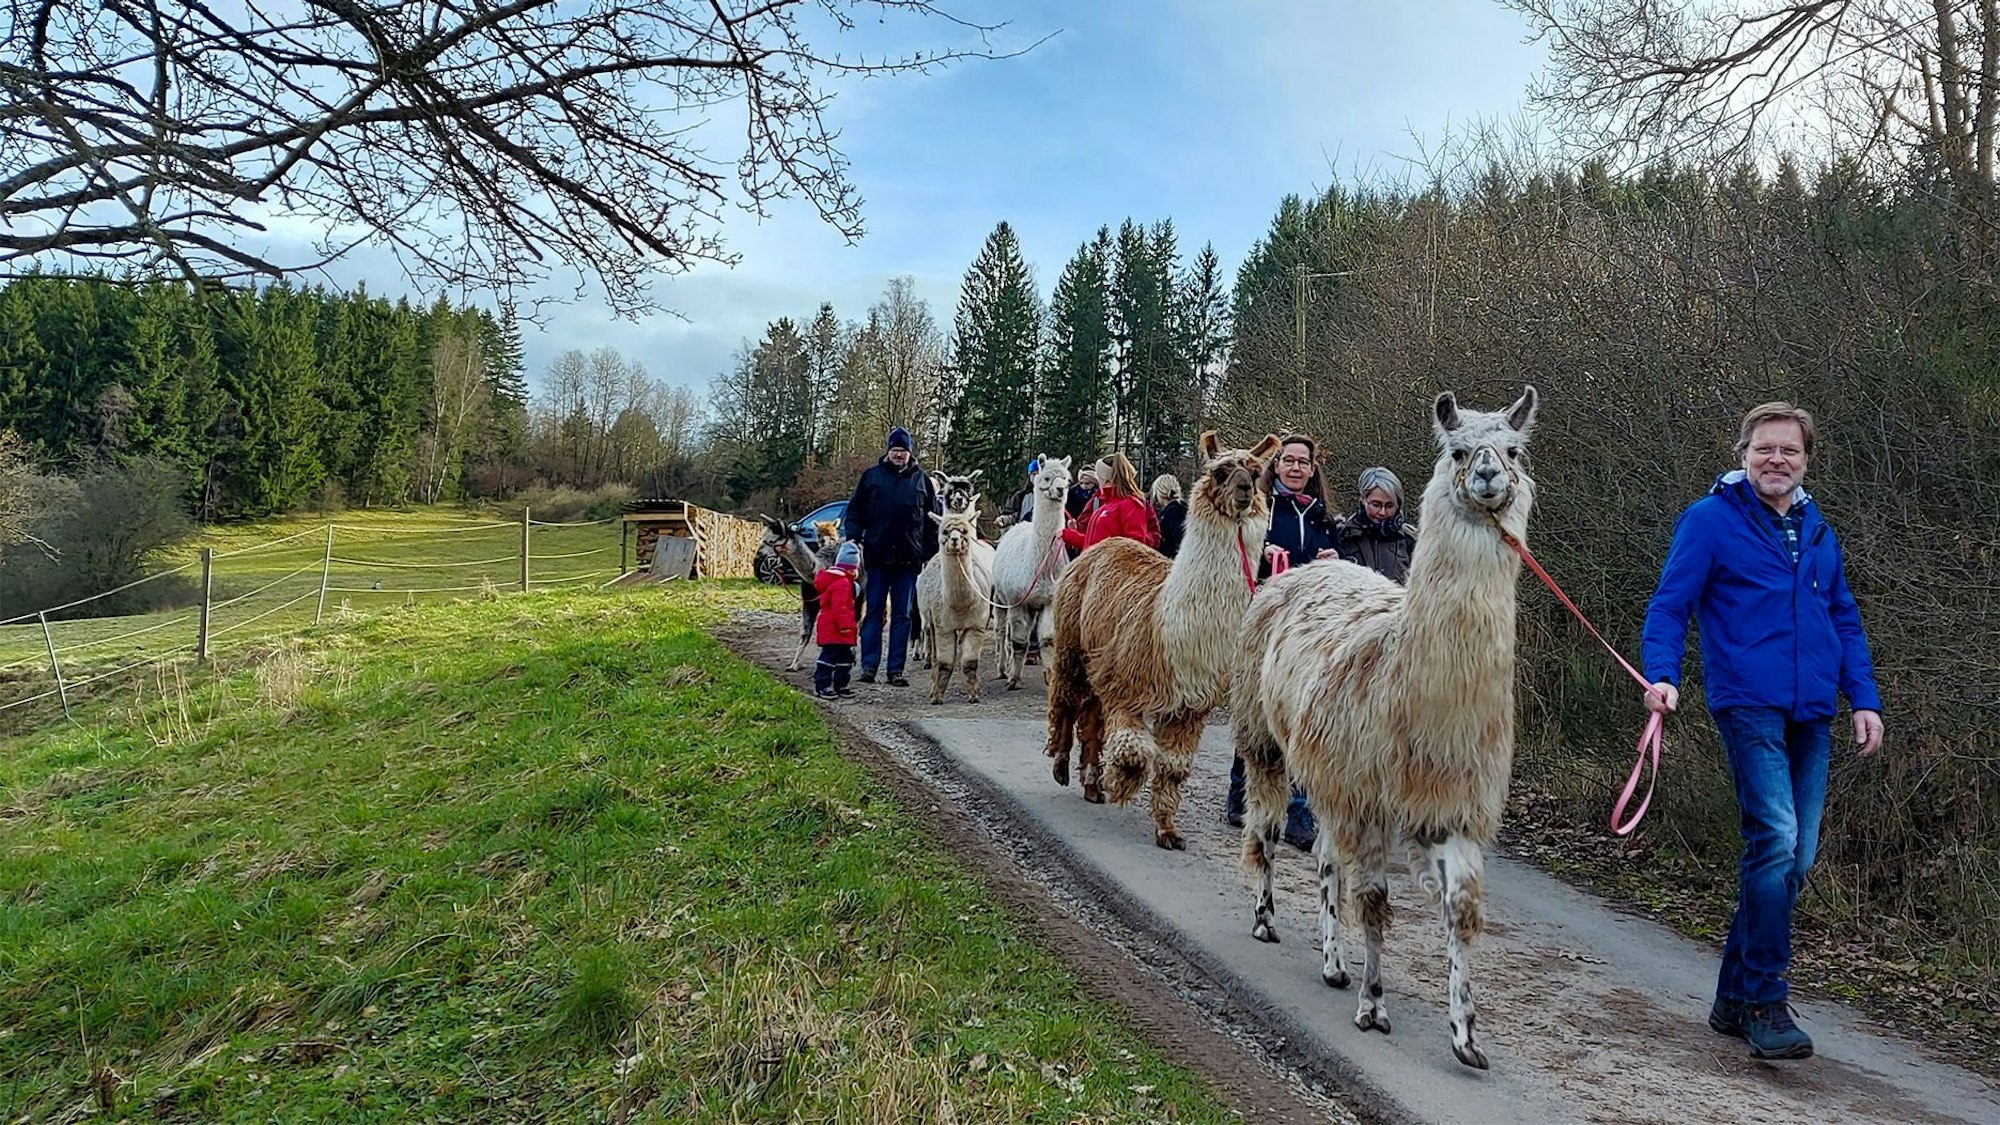 Das Bild zeigt einige der Teilnehmer bei ihrem Spaziergang mit den Tieren auf einem Weg.